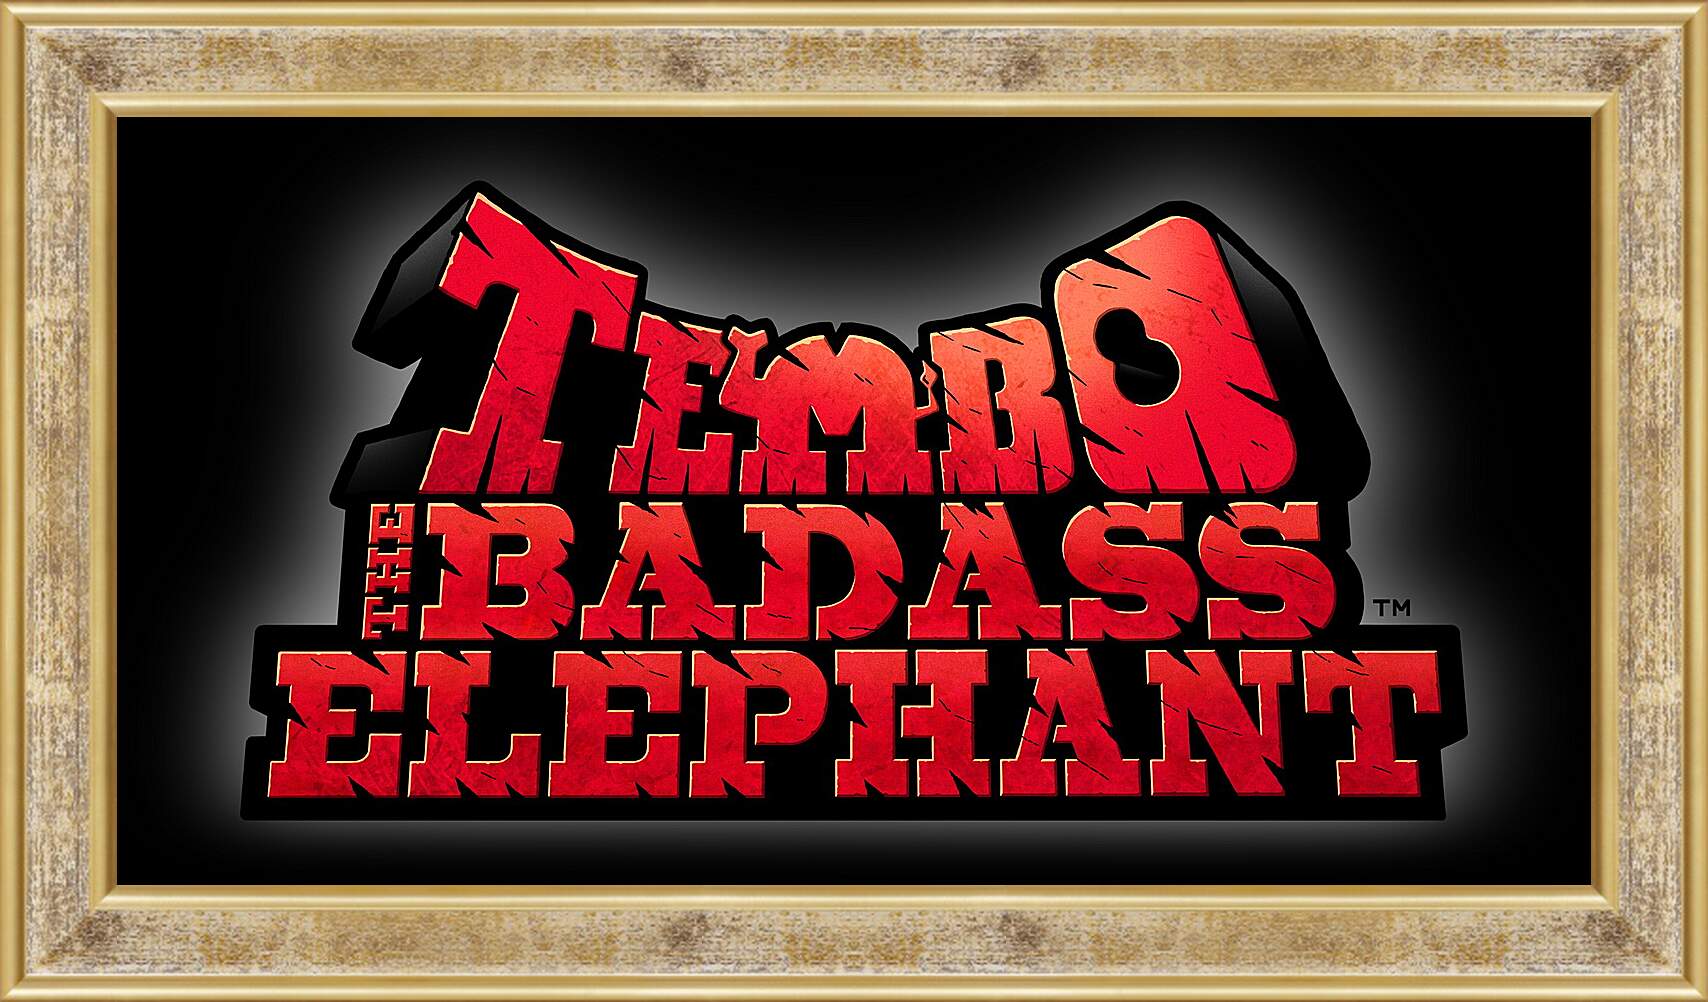 Картина в раме - Tembo The Badass Elephant
